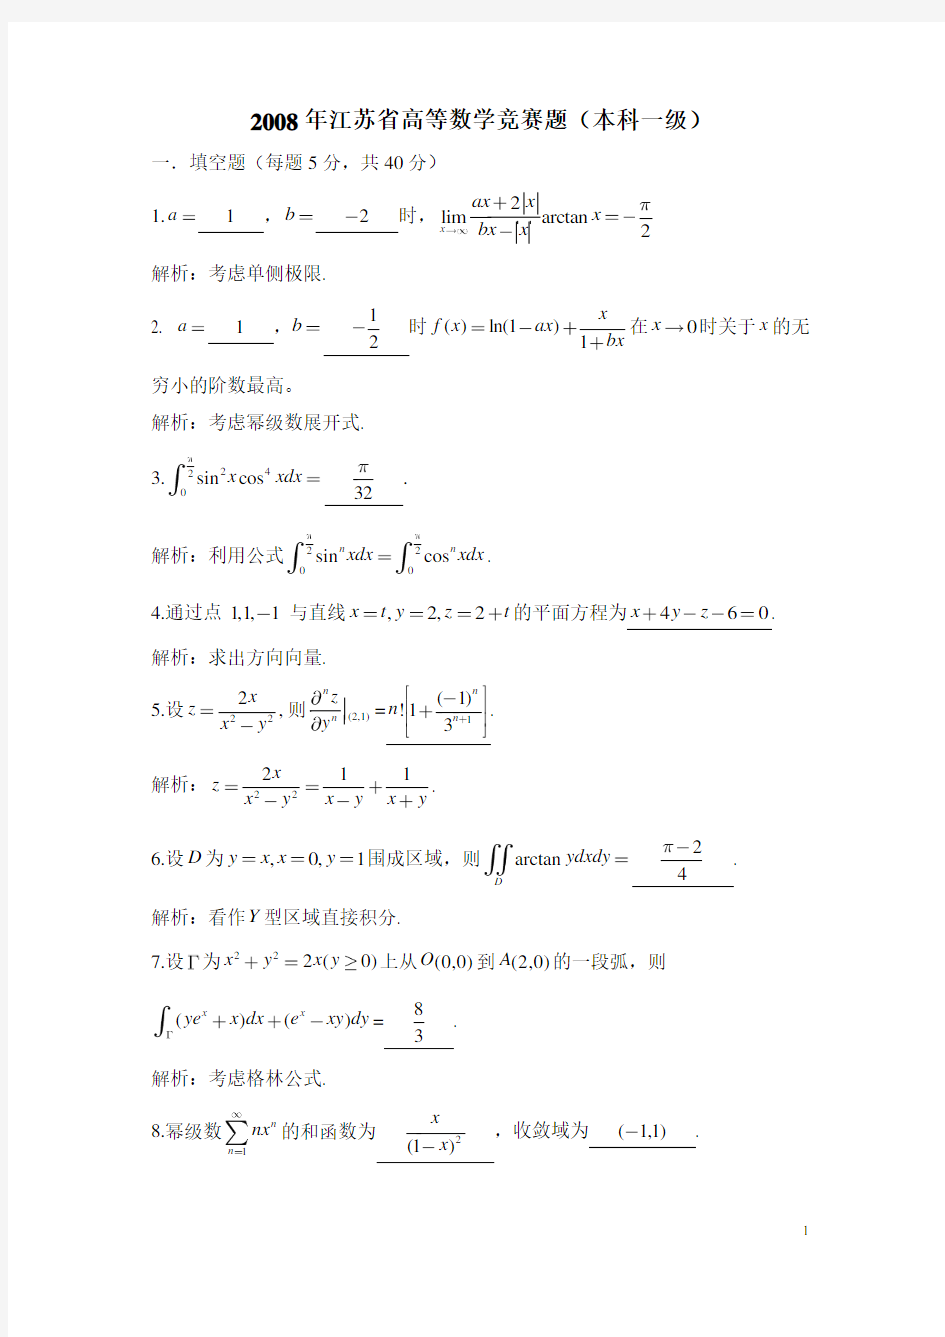 2008江苏省高校第9届高等数学赛试题(答案)